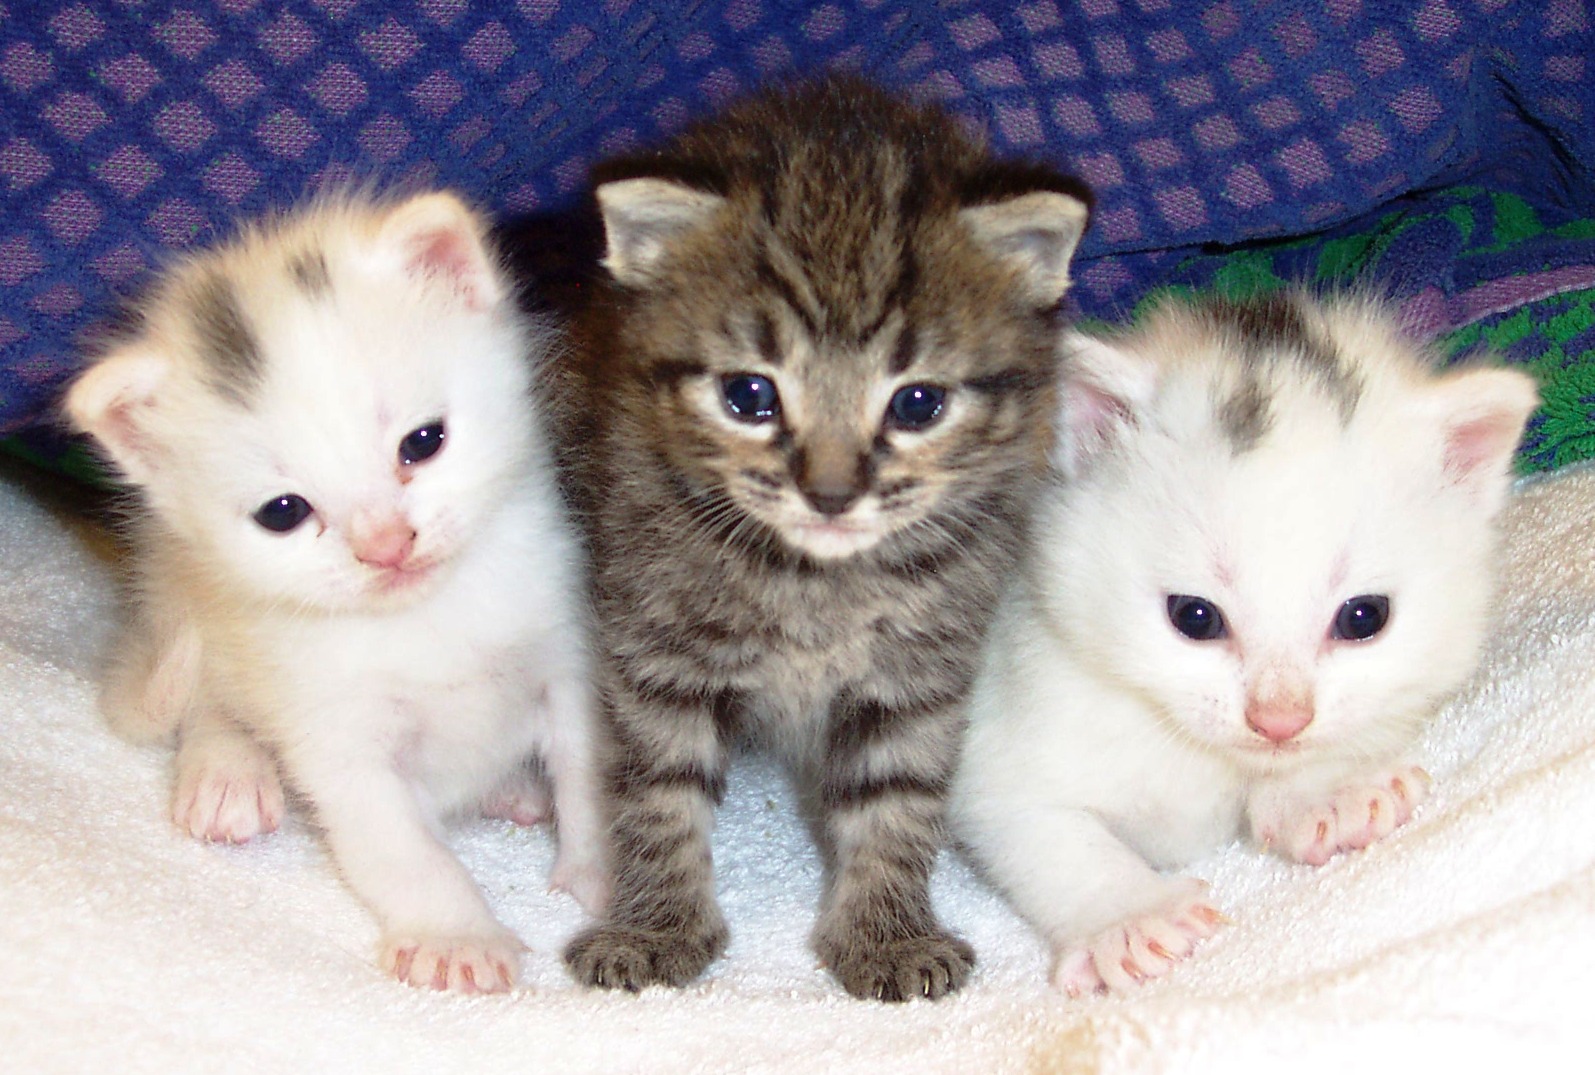  Gambar  tiga anak kucing  yang manis  dan imut